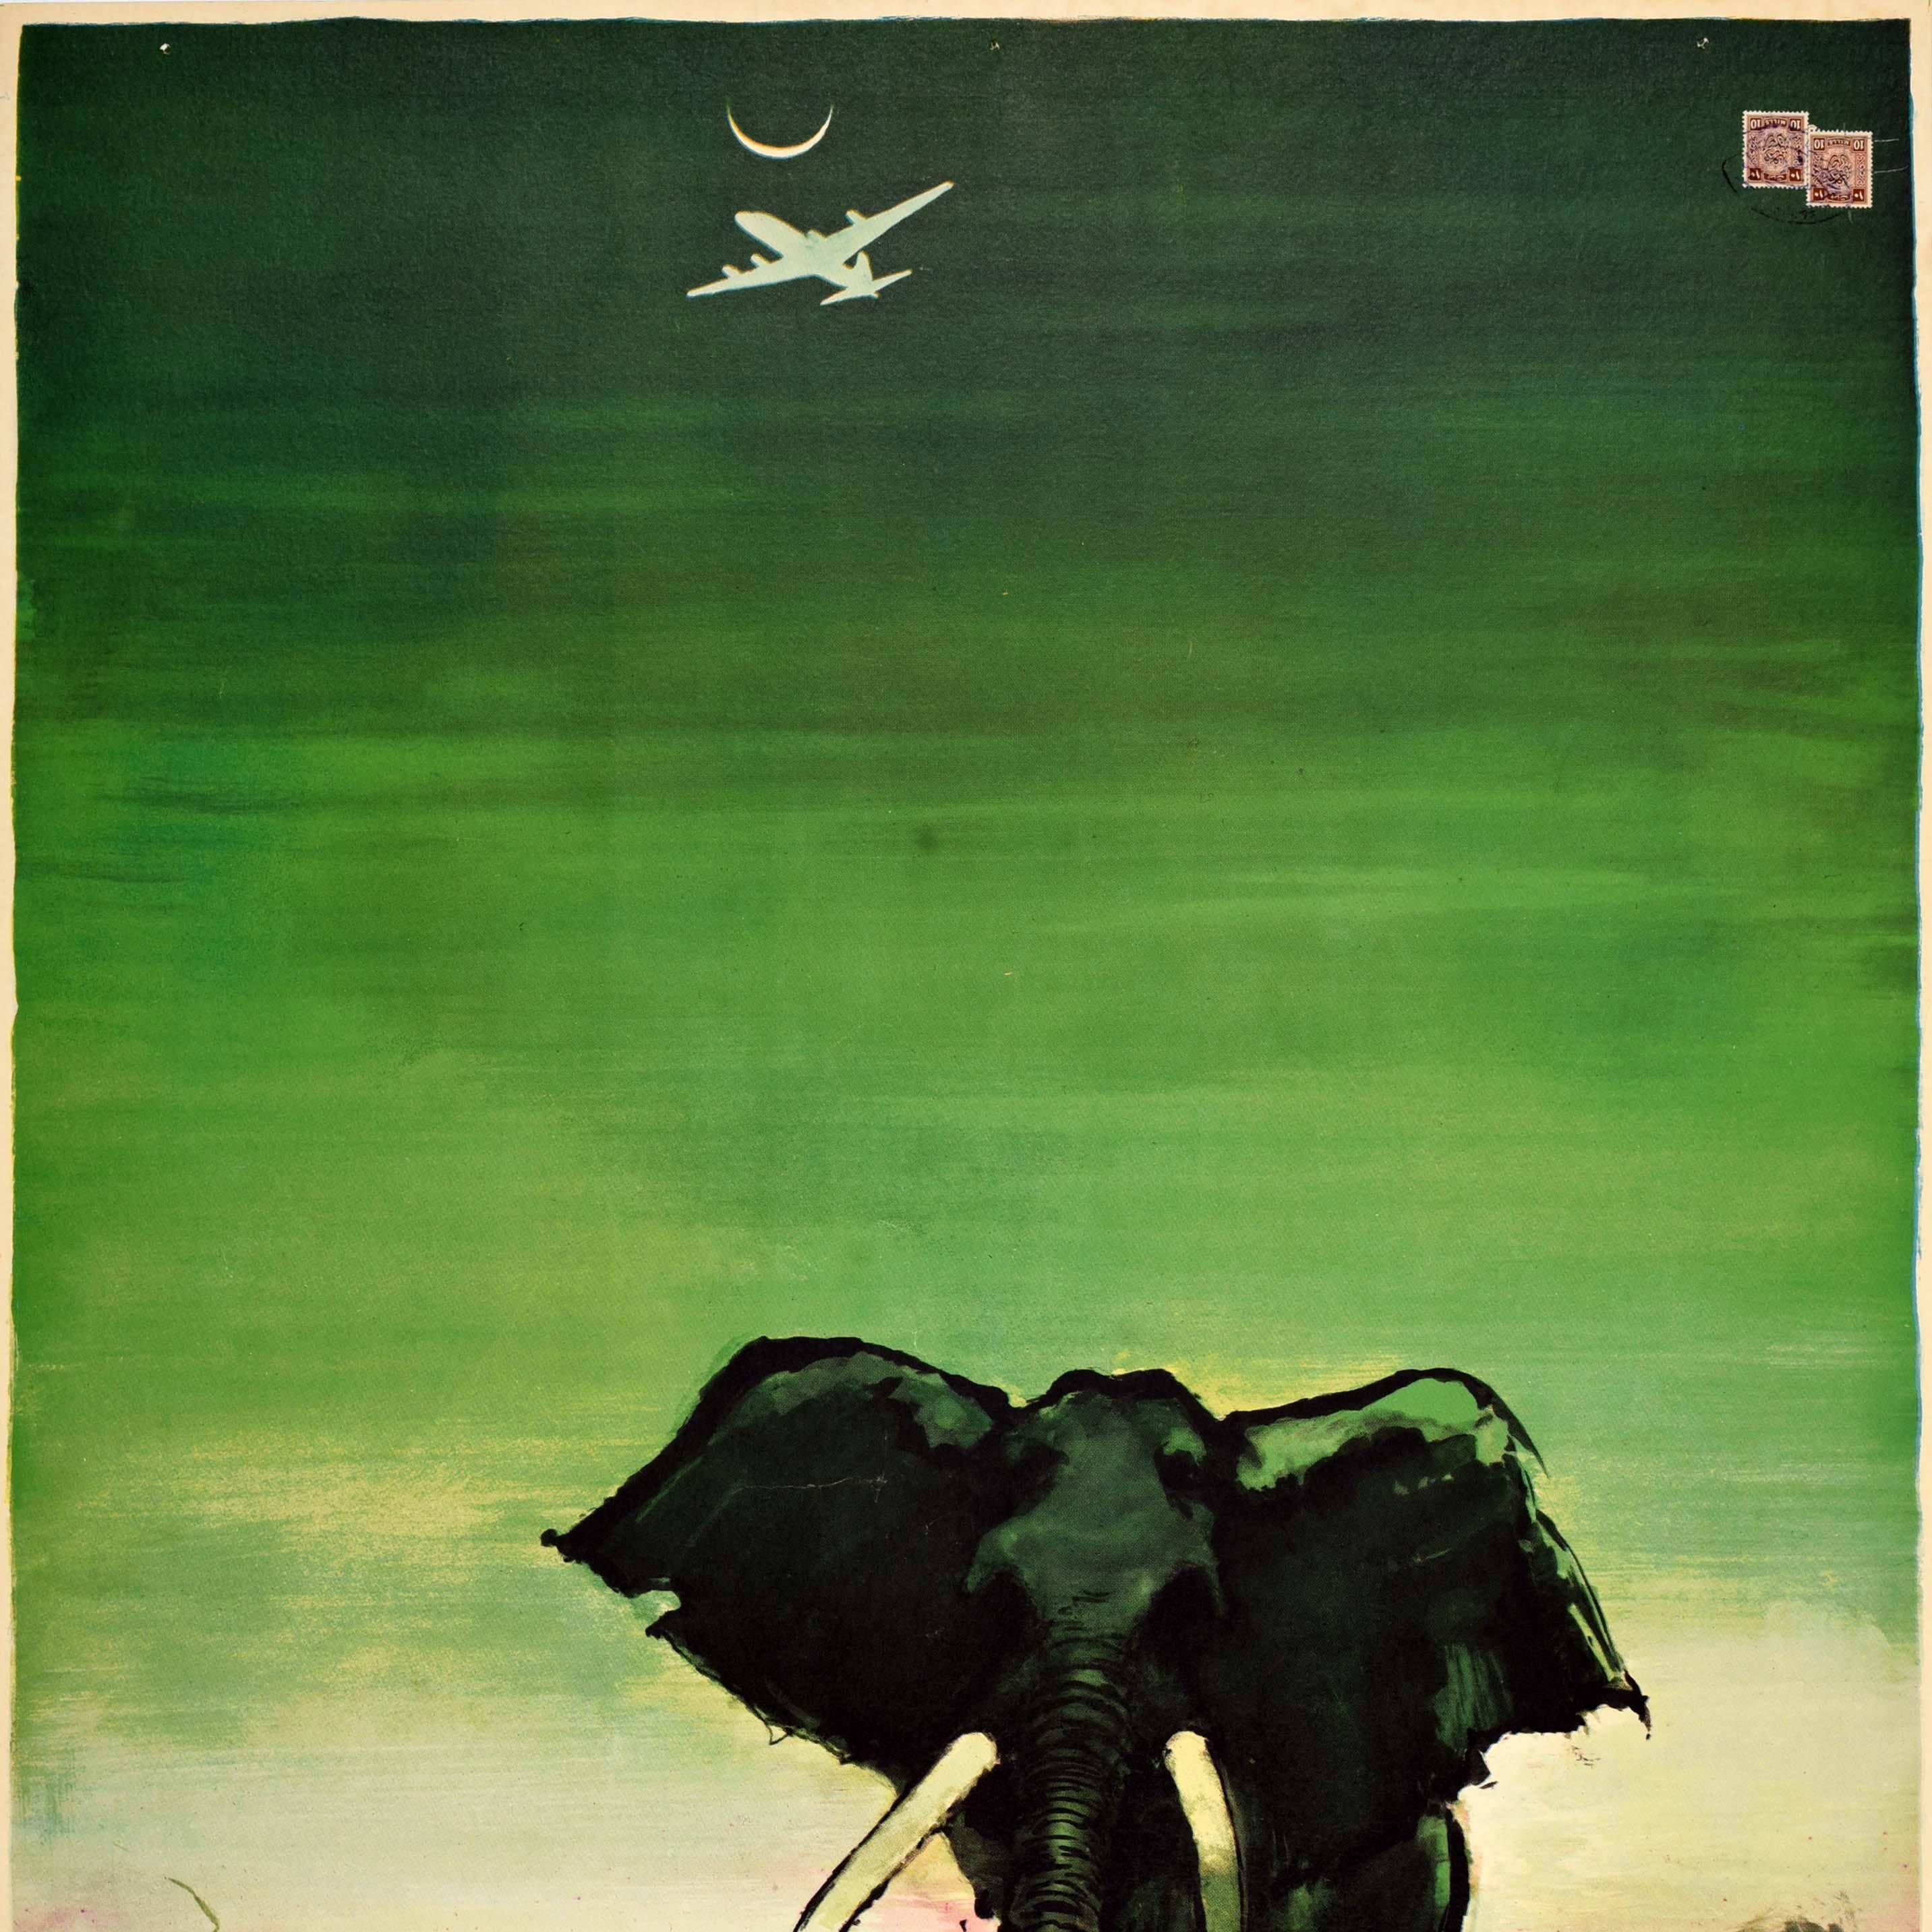 Original-Vintage-Reiseplakat Afrika SAS Airline Otto Nielson, Elefanten-Design (Schwarz), Print, von Otto Nielsen